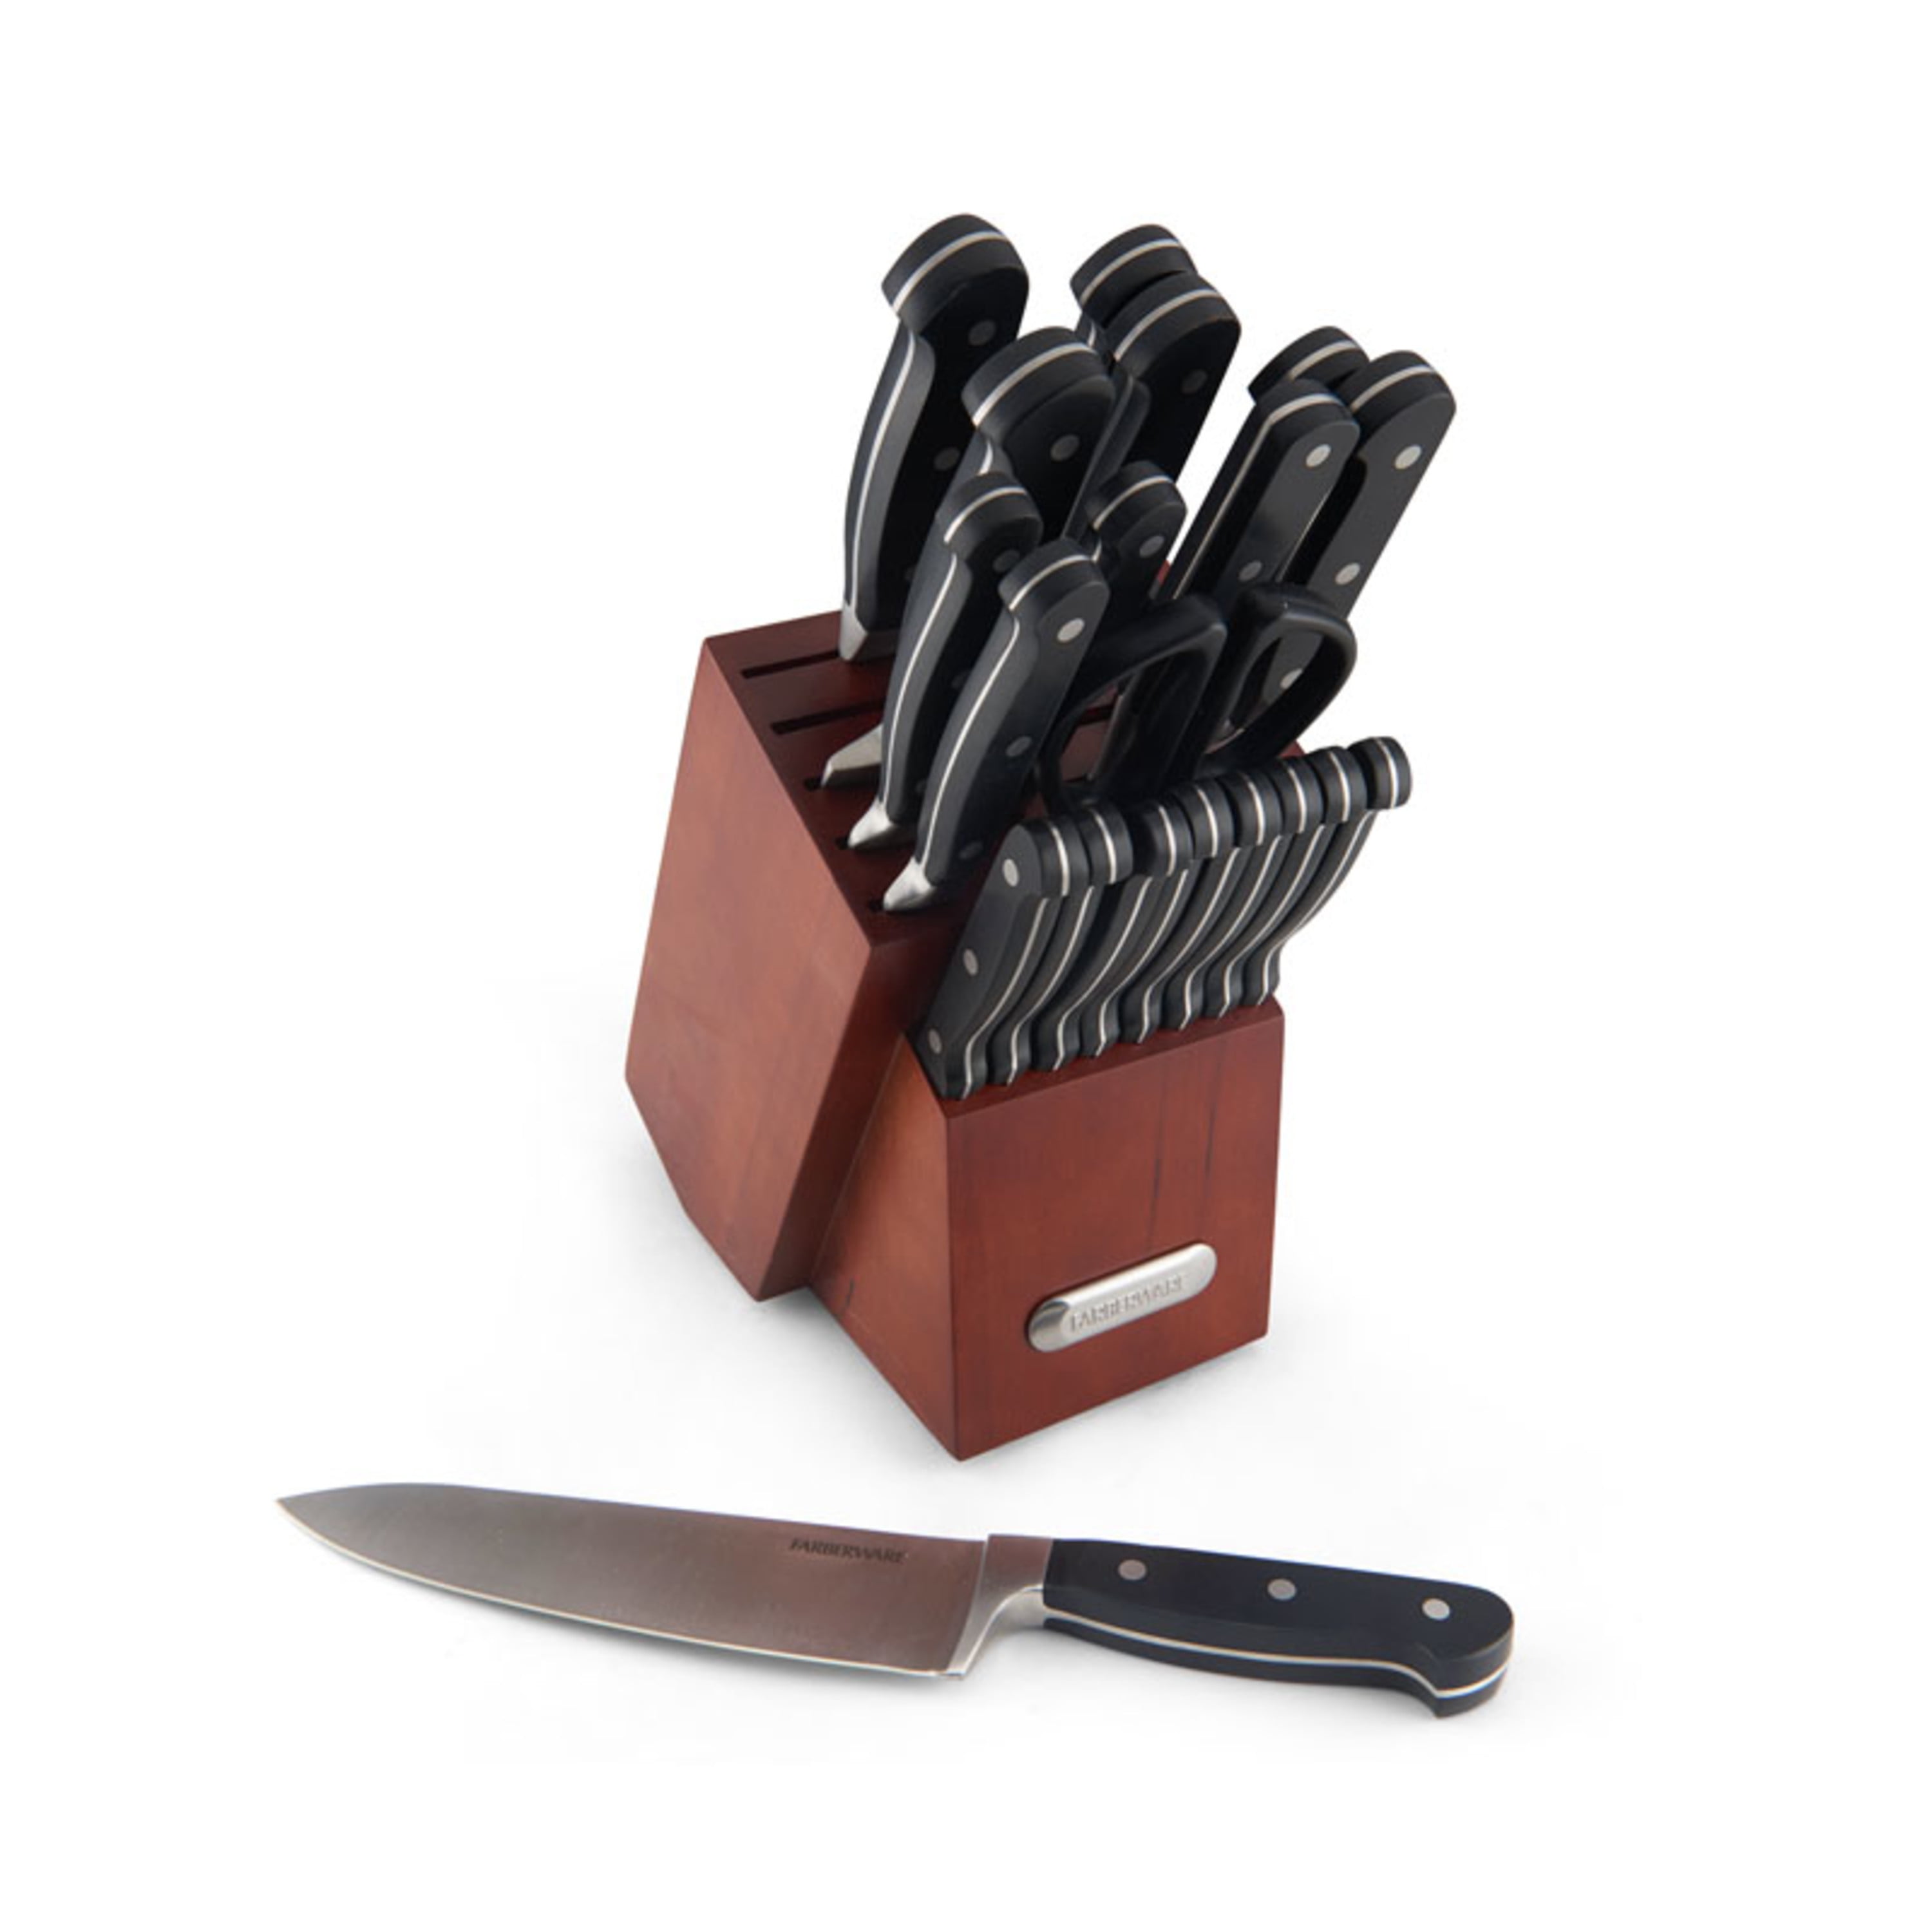 Knife Set 3 Pcs - EGO @ RoyalDesign